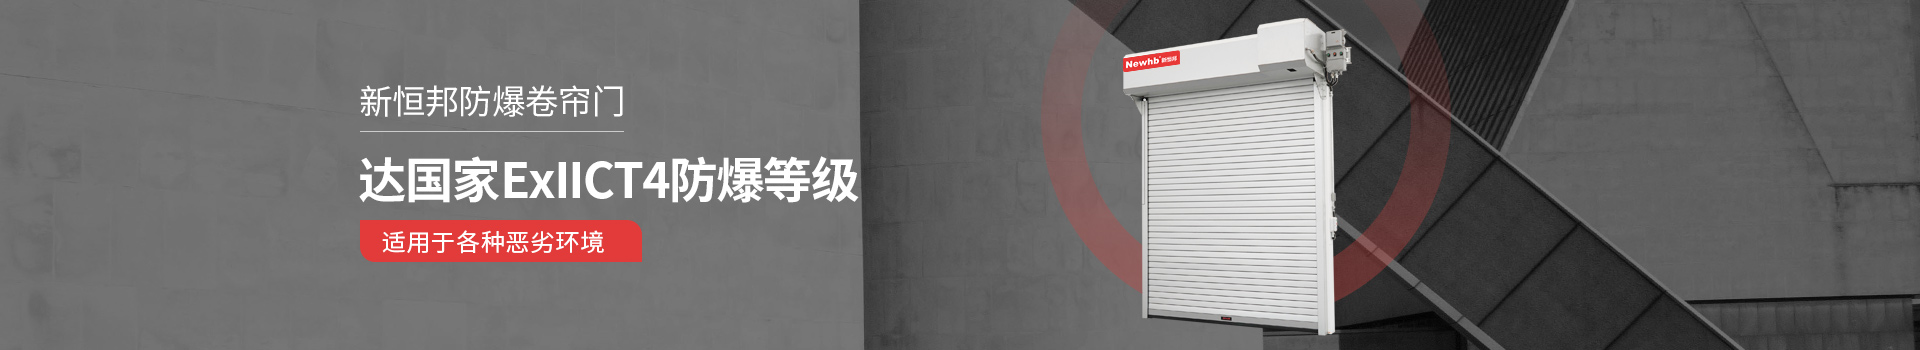 新恒邦安博体育(中国)官方网站达国家ExllCT4防爆等级